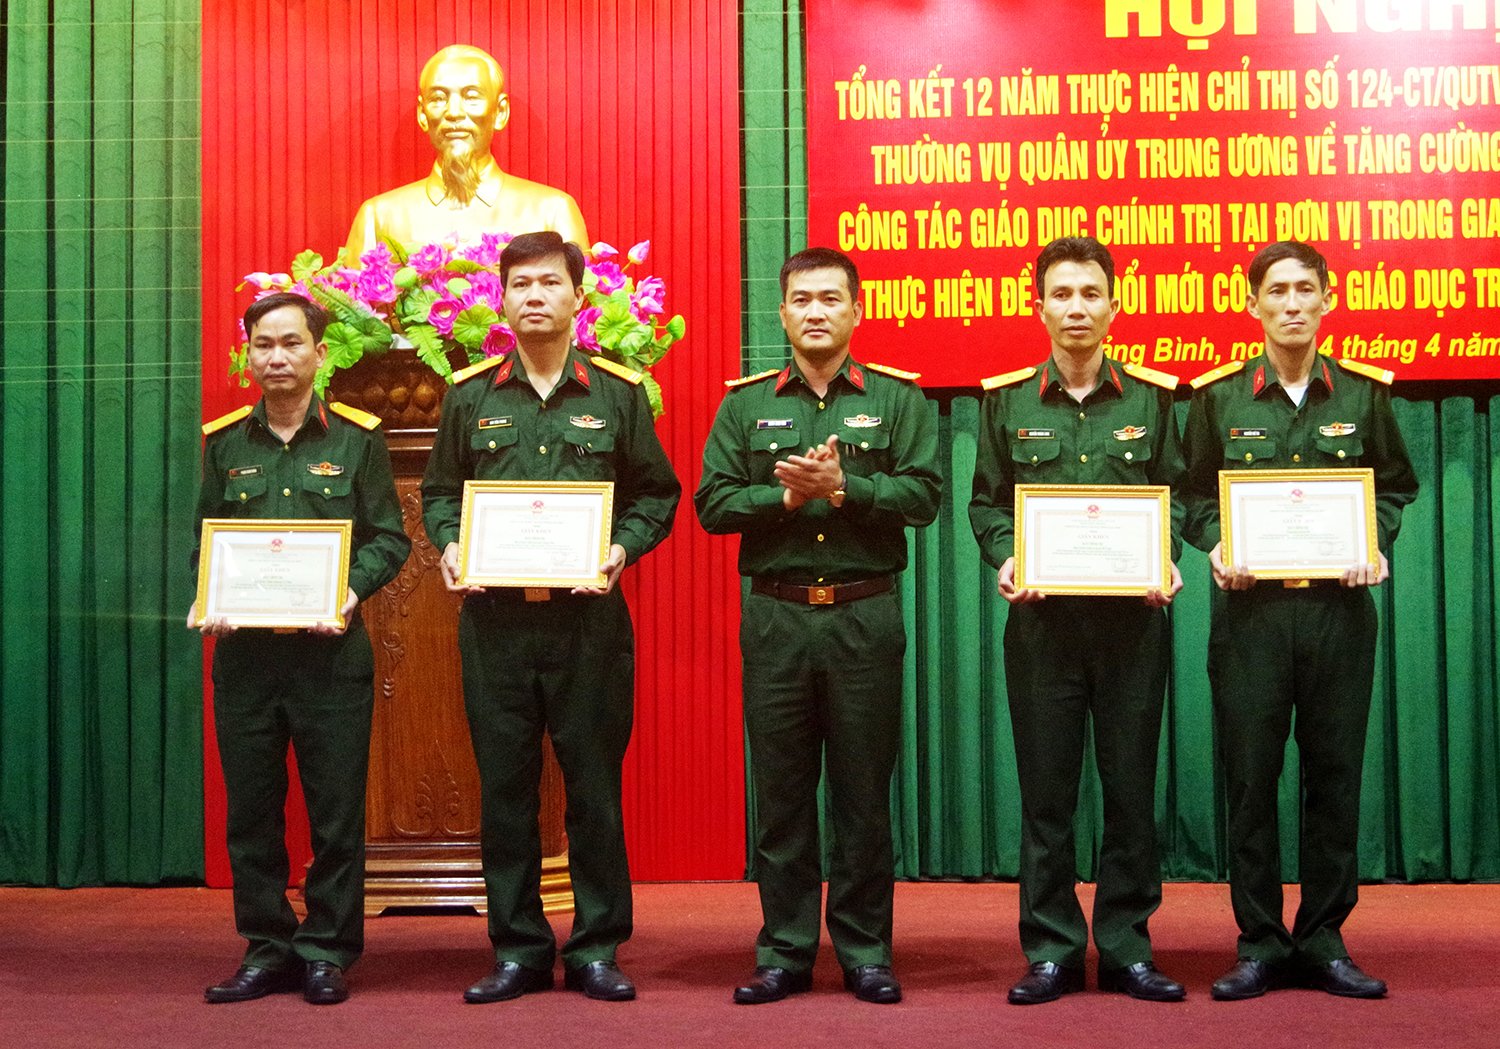 Tổng kết 12 năm thực hiện Chỉ thị số 124 của Quân ủy Trung ương